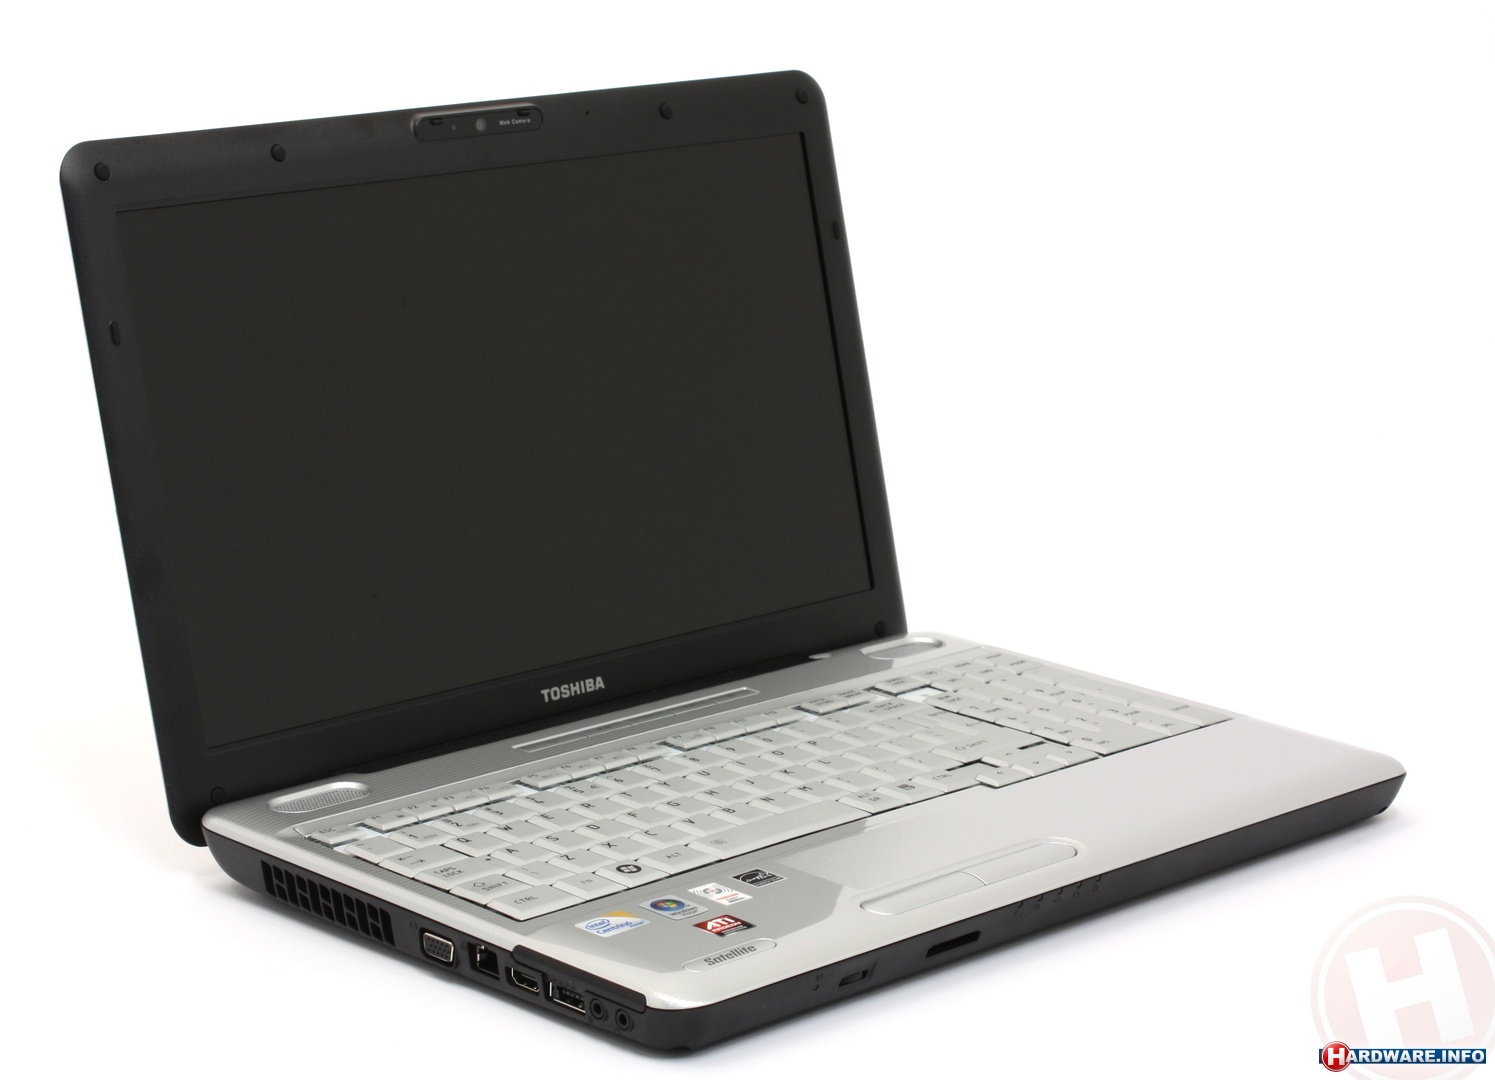 Bán laptop cũ toshiba L500 giá rẻ tại Hà Nội